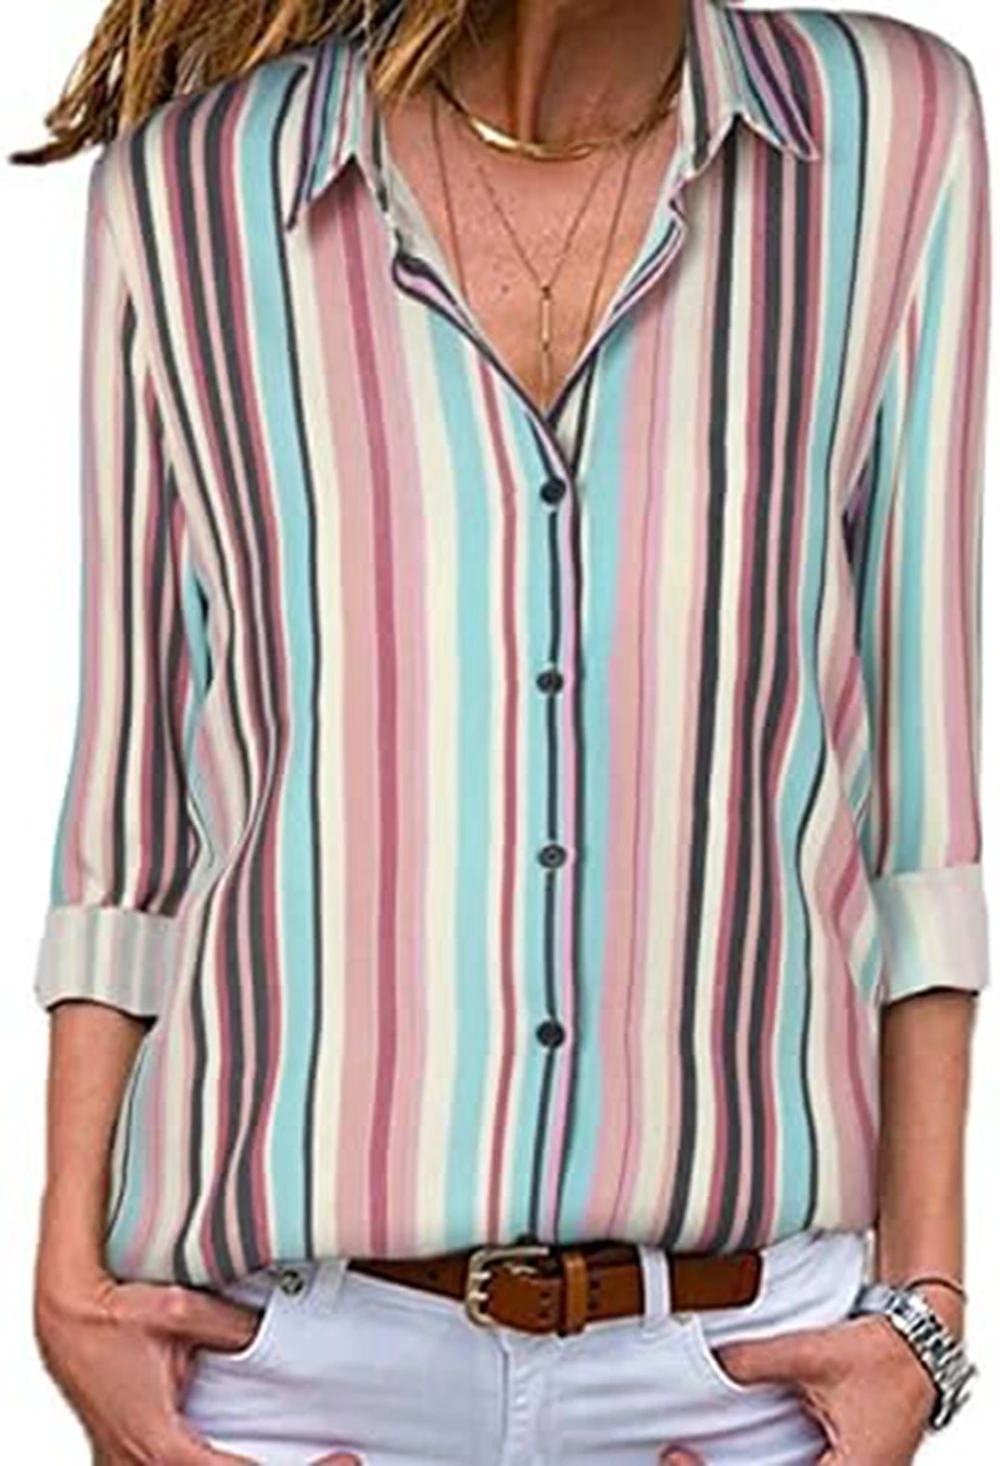 

Женская рубашка с V-образным вырезом, полосатая рубашка с коротким рукавом и пуговицами, Повседневная рубашка, женская элегантная рубашка, стильная пикантная блузка